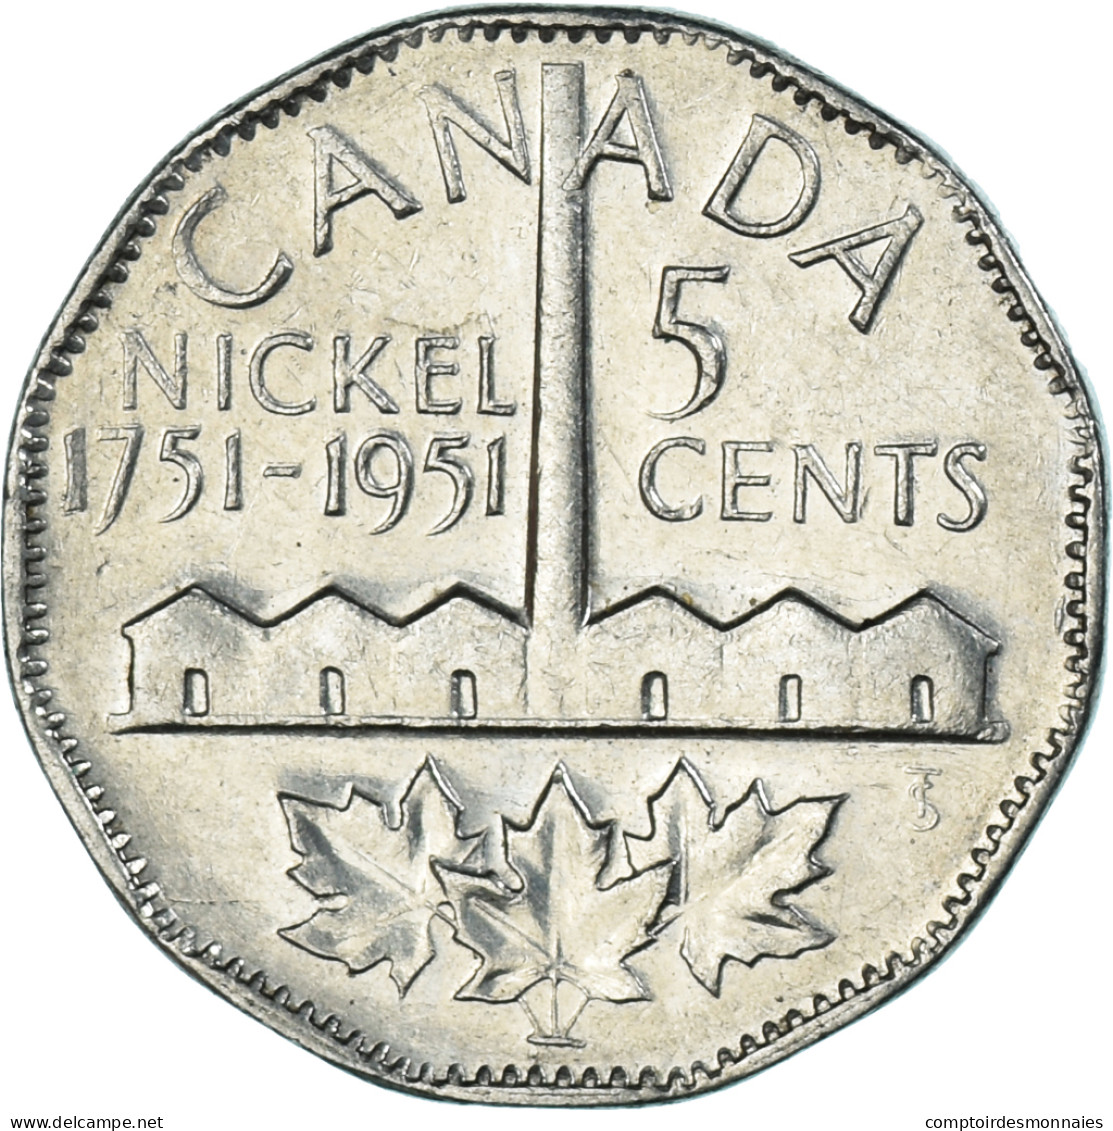 Monnaie, Canada, 5 Cents, 1951 - Canada